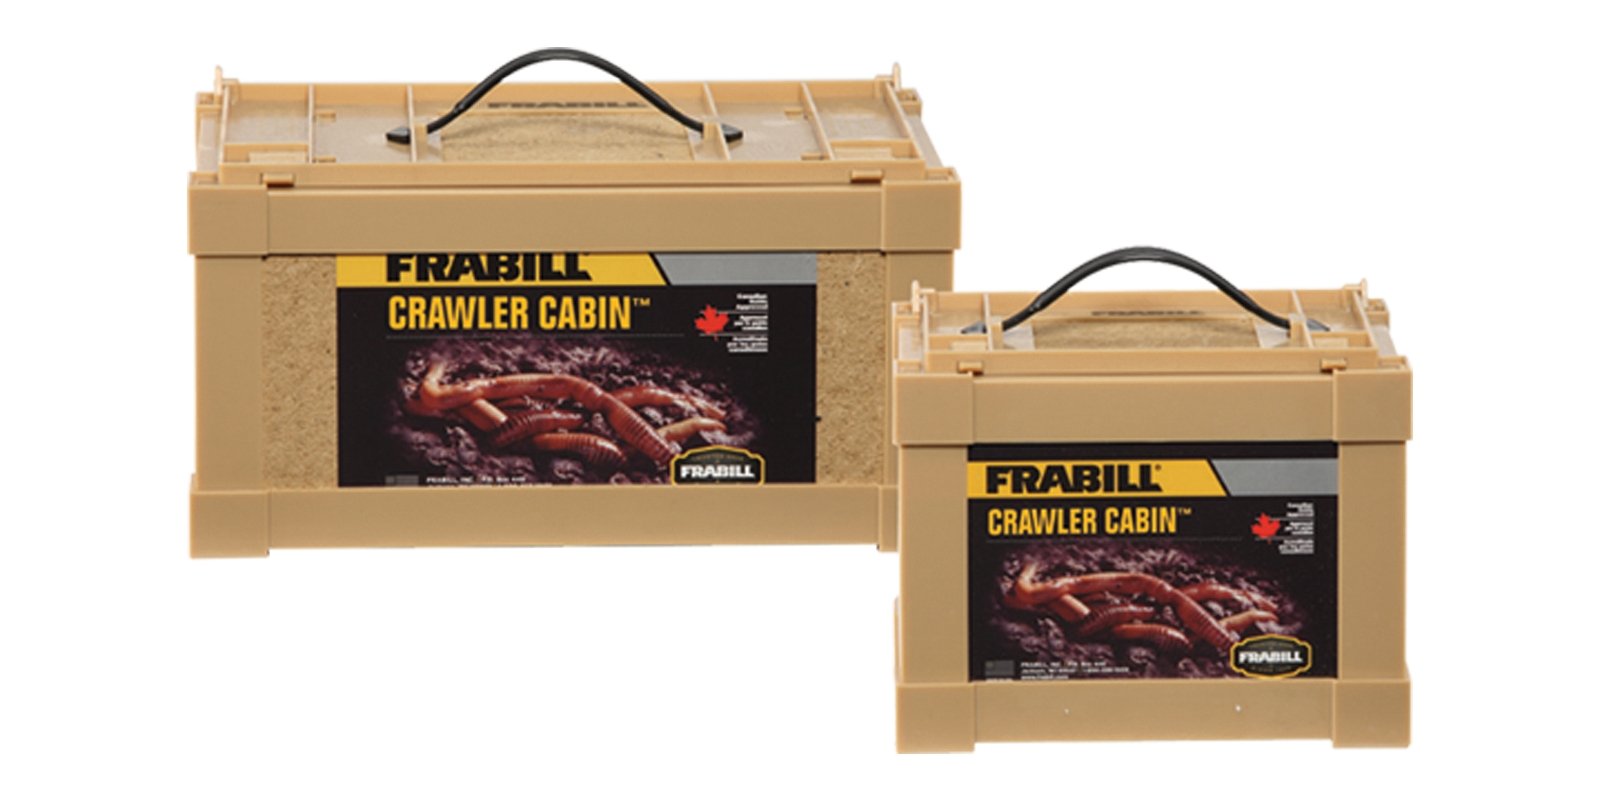 Frabill Crawler Cabin - Hamilton Bait and Tackle